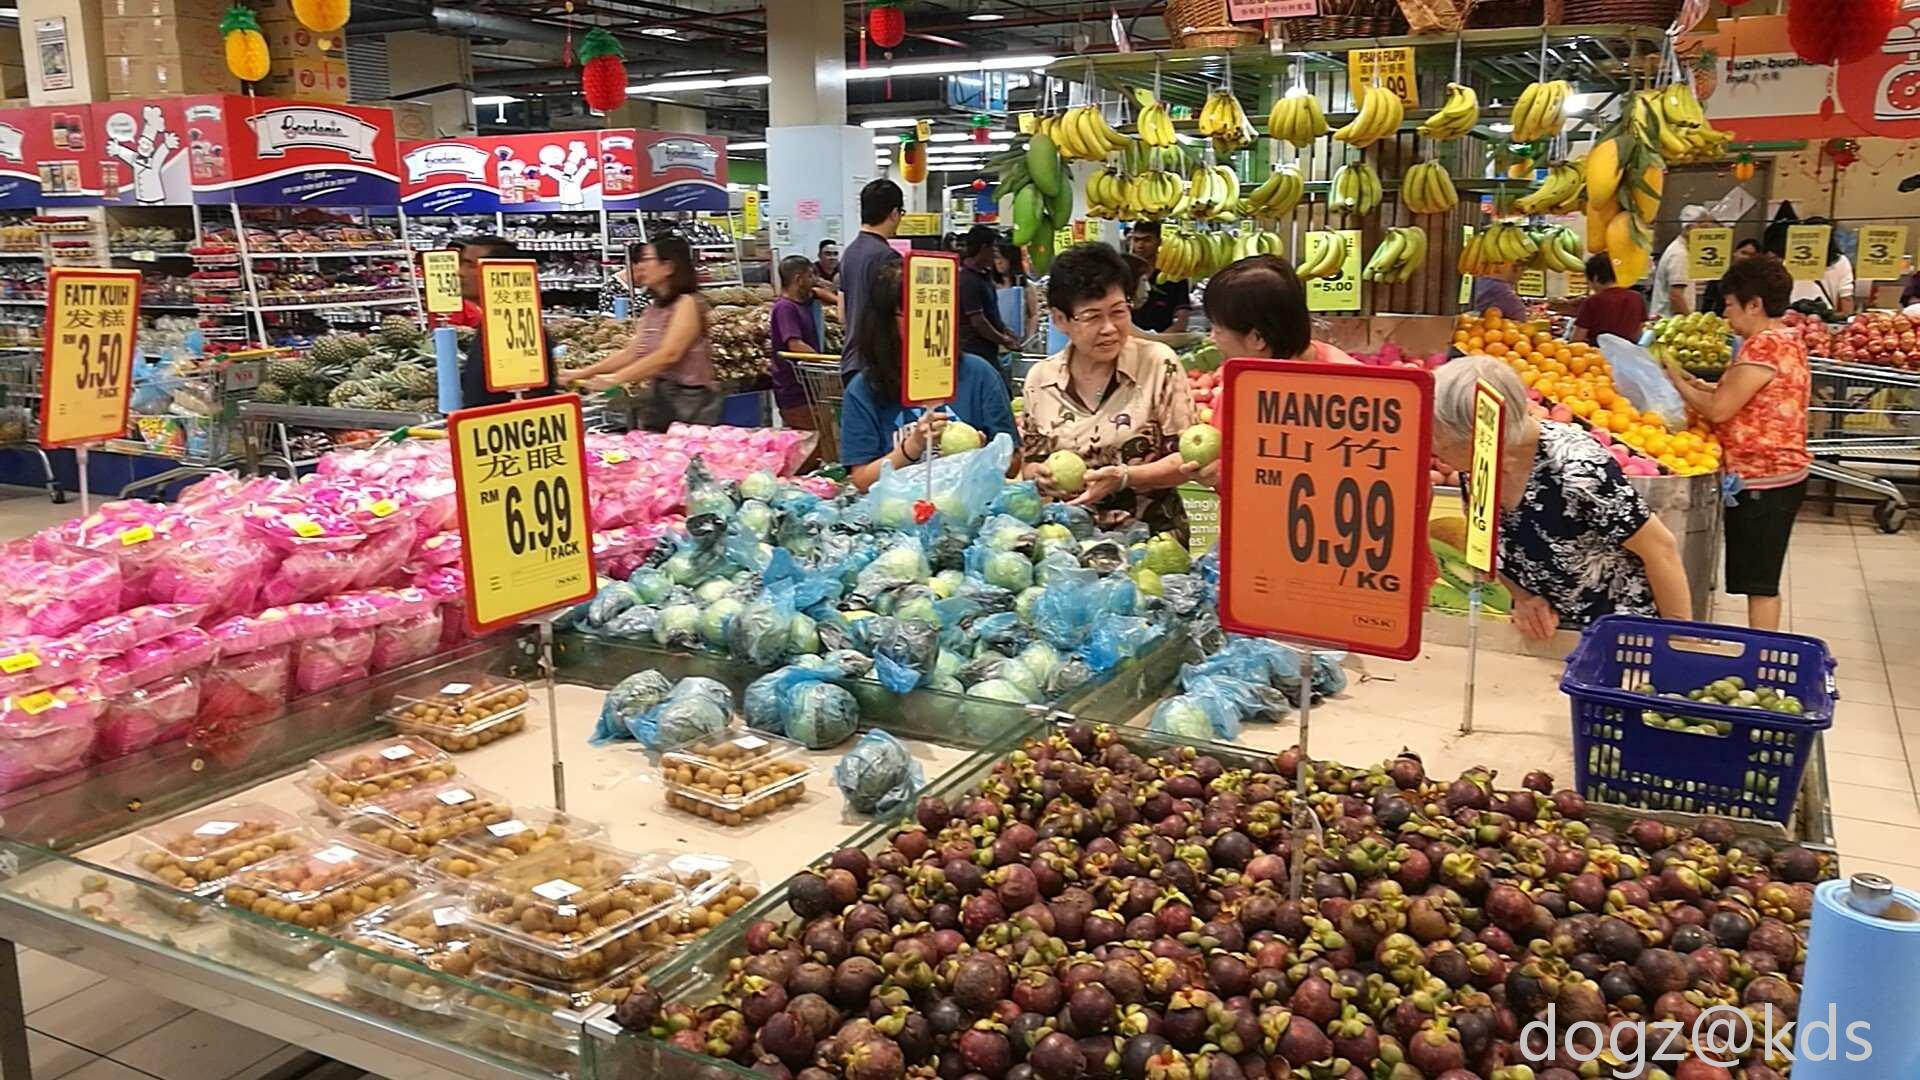 故事 当地华人称之为"霸级市场 比较类似于魔都的"麦德龙"批发超市